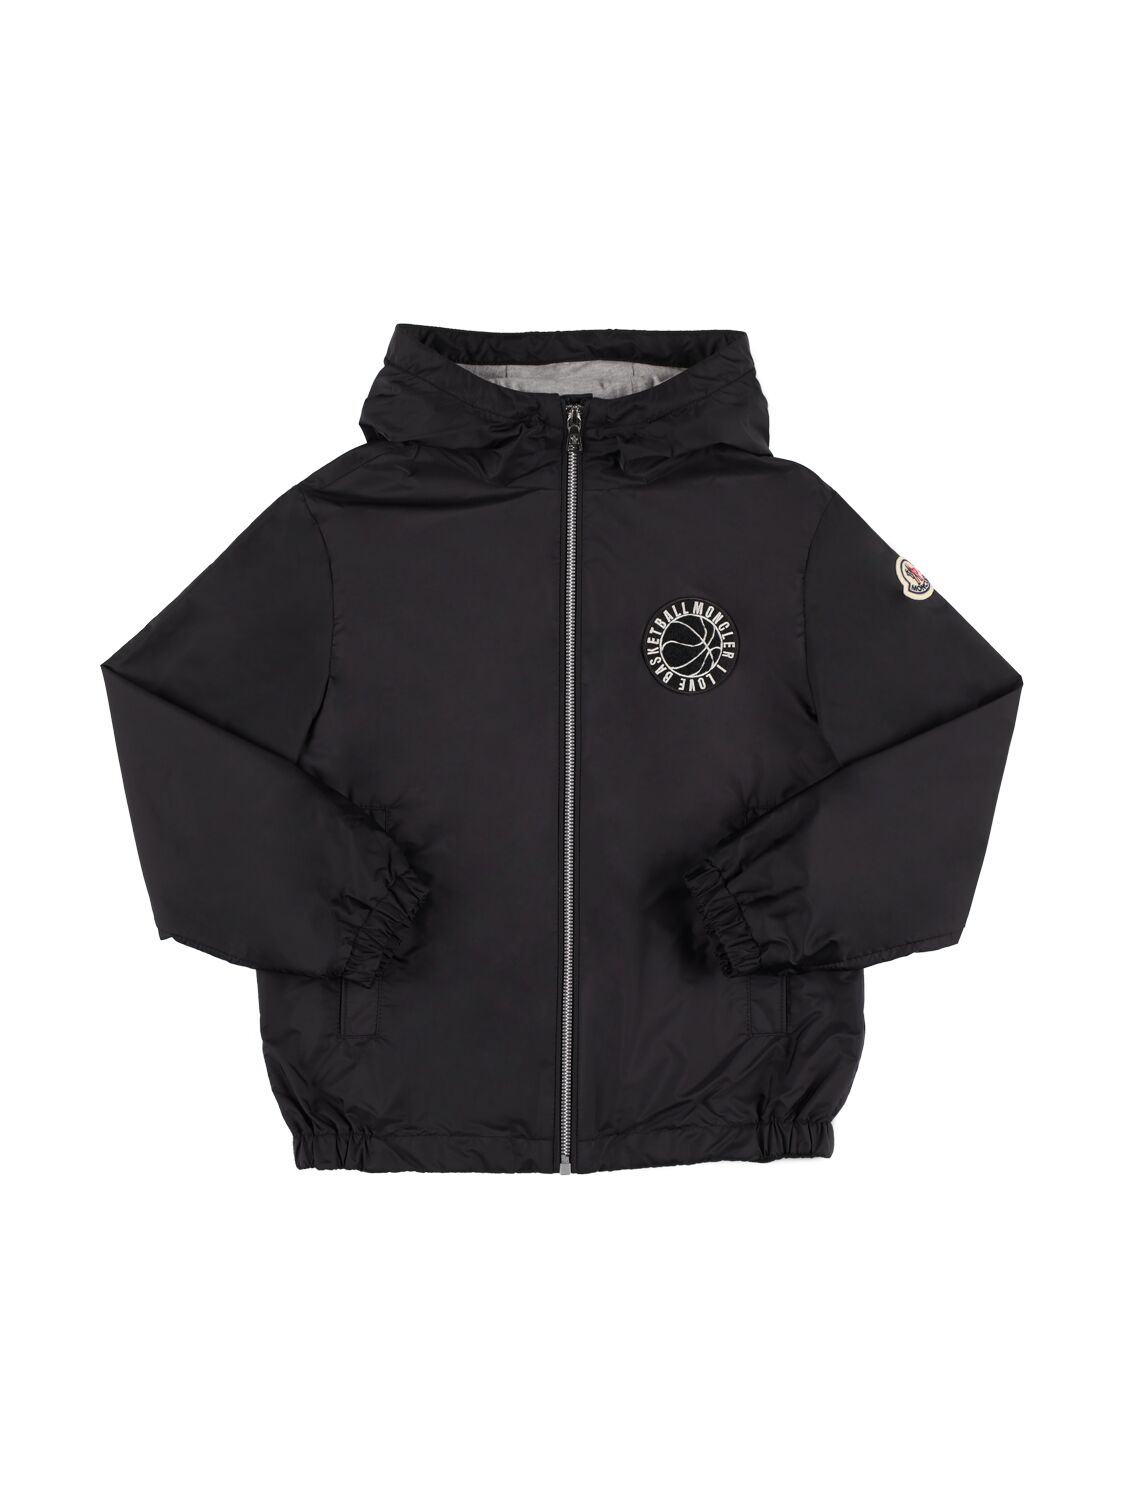 Image of Ambertine Nylon Rainwear Jacket